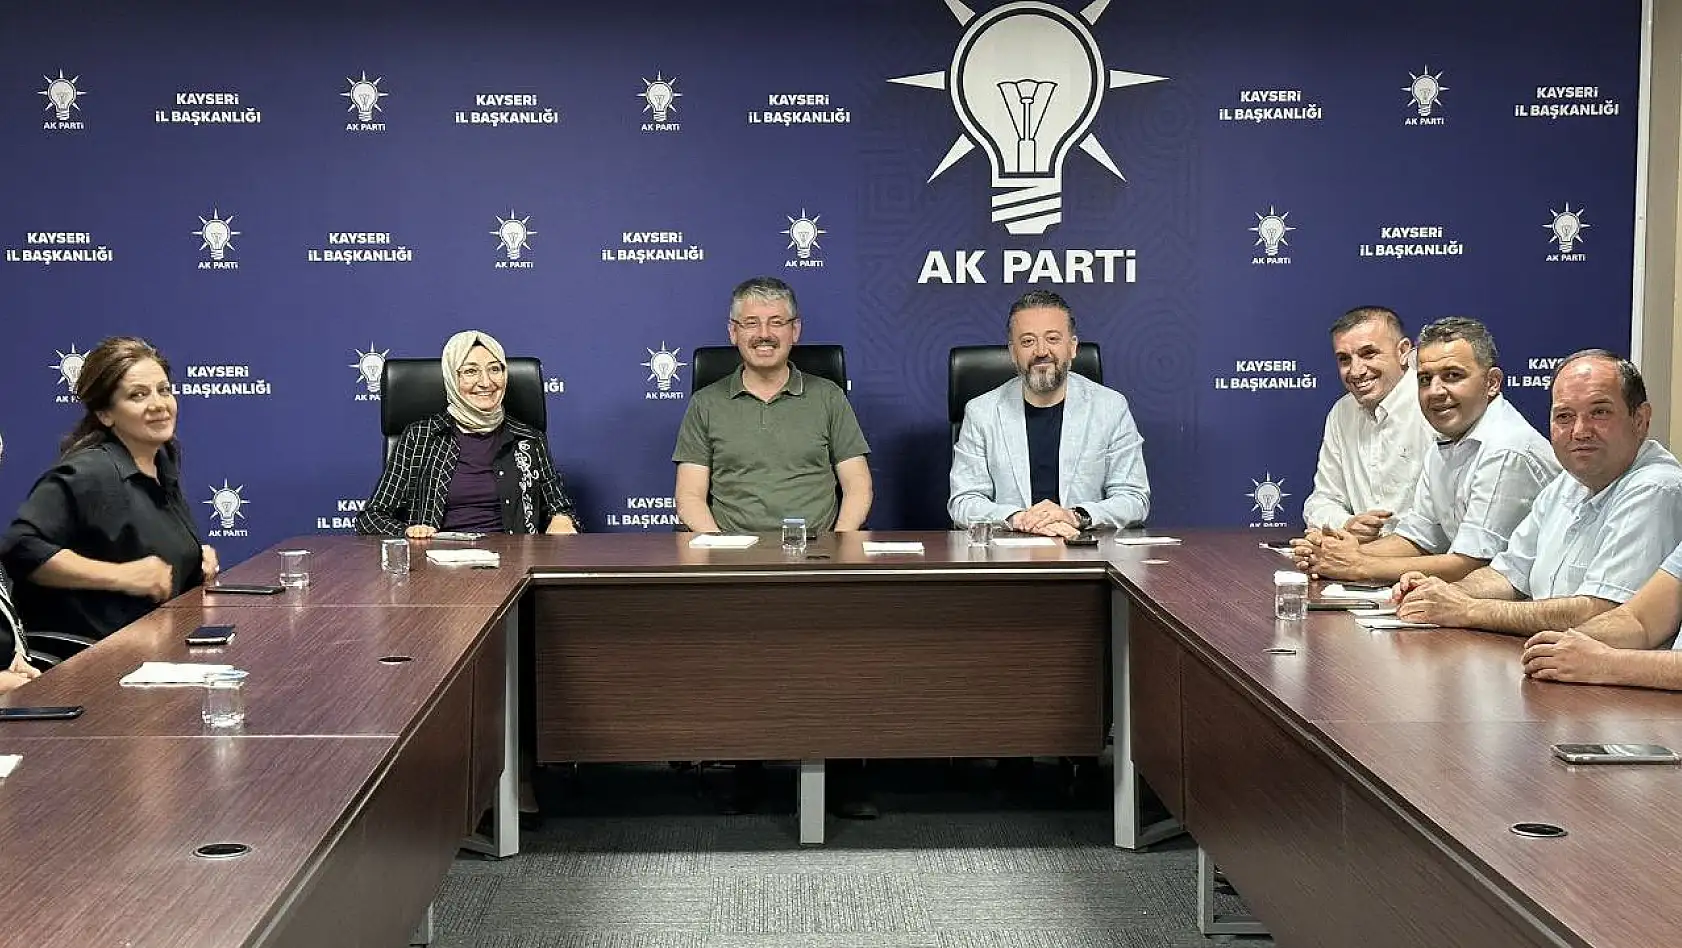 AK Partililer neye gülüyor?